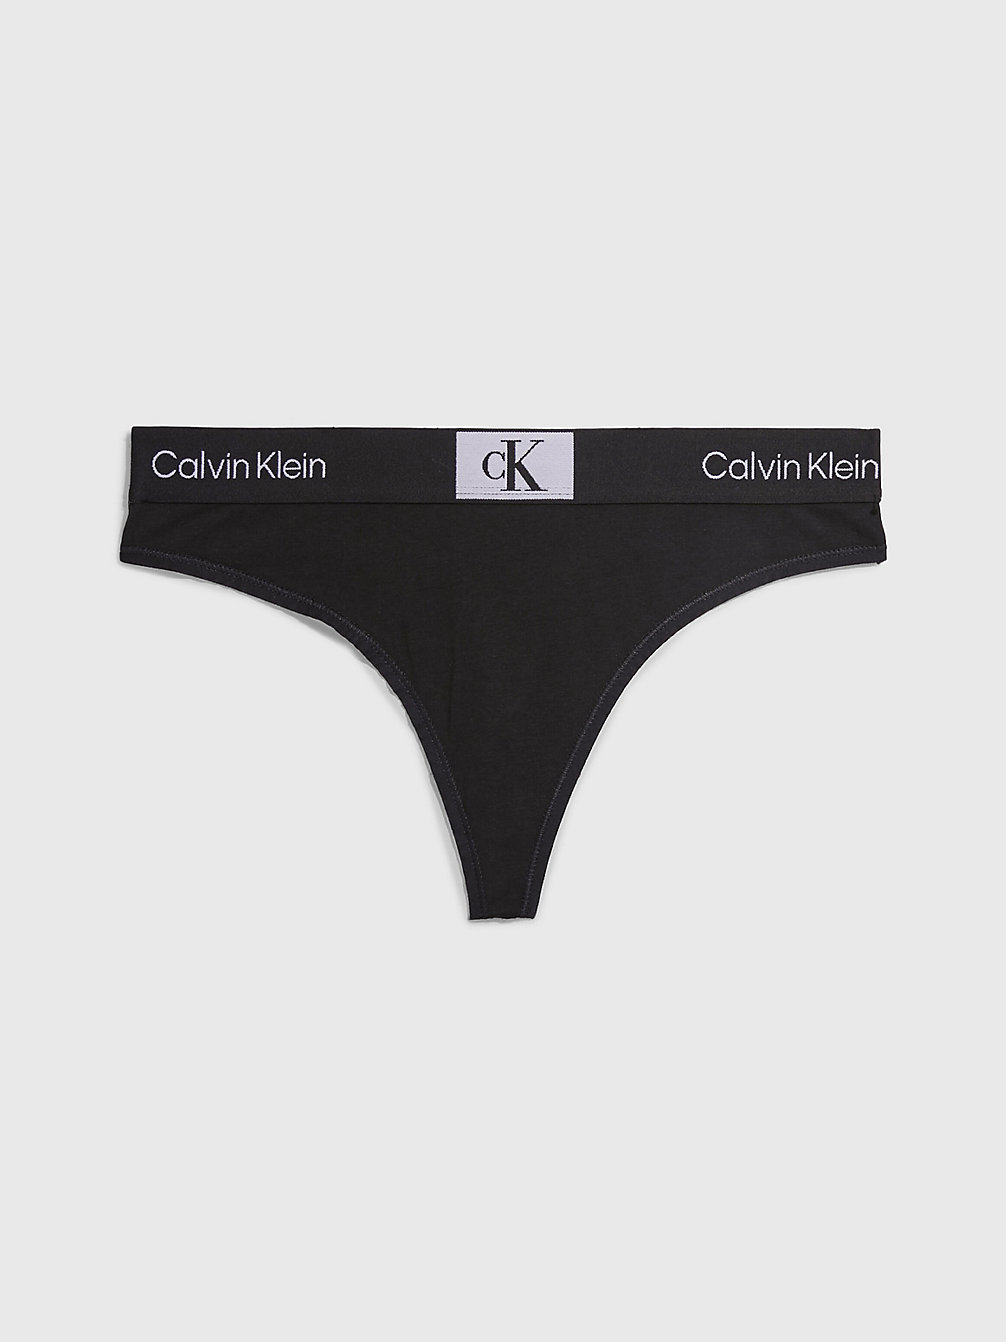 BLACK > String - Ck96 > undefined Damen - Calvin Klein